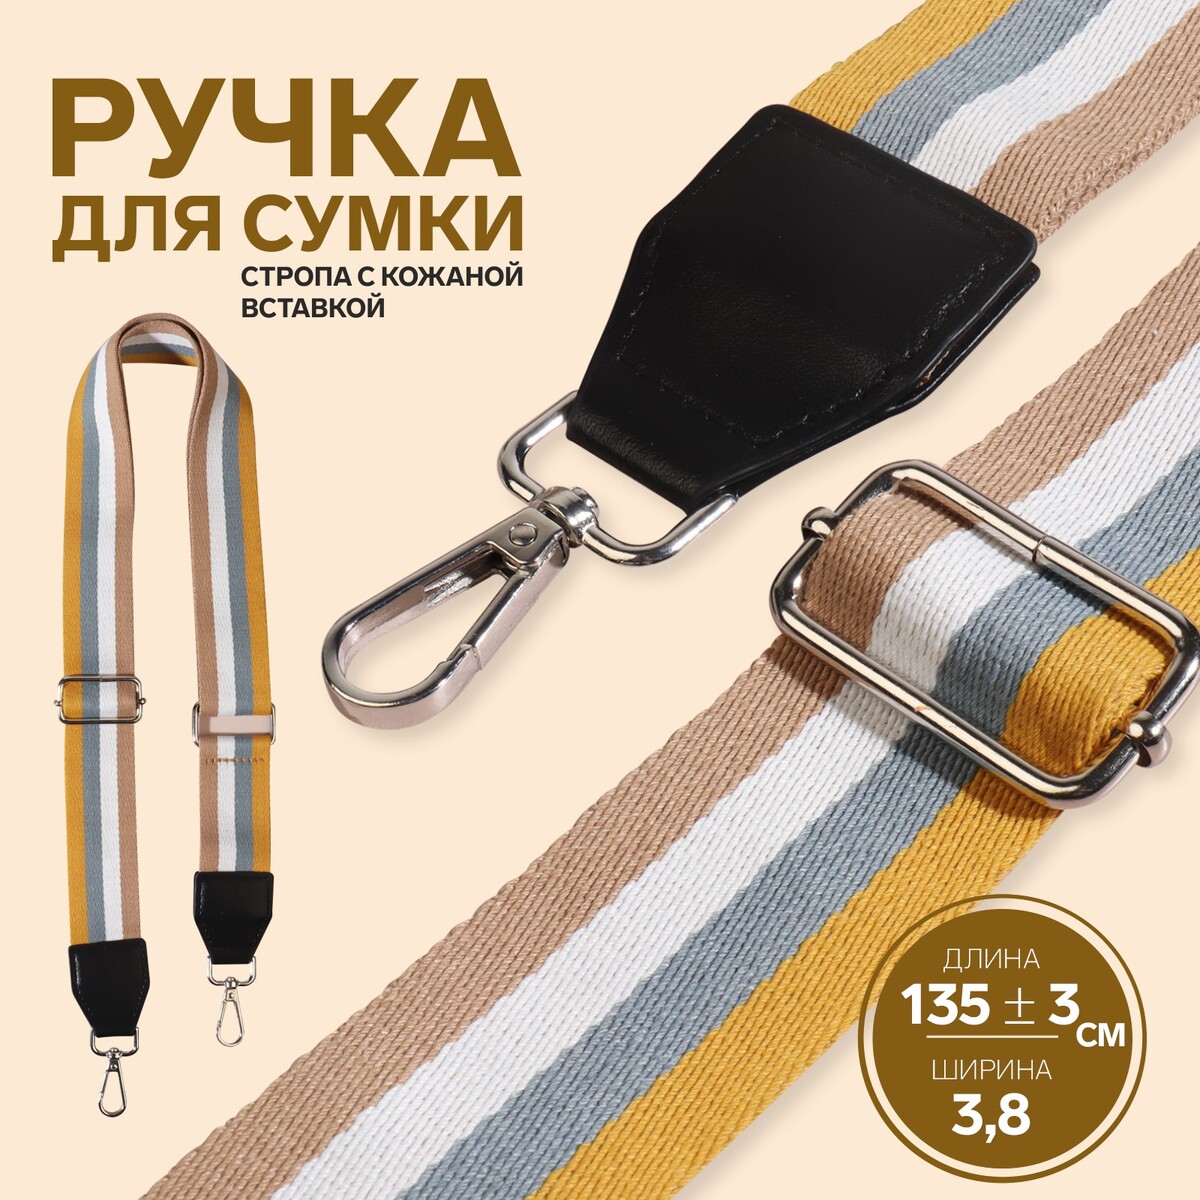 Ручка для сумки, стропа с кожаной вставкой, 135 ± 3 × 3,8 см, цвет желтый/серый/белый/бежевый ручка для сумки стропа с кожаной вставкой 140 × 3 8 см белый красный